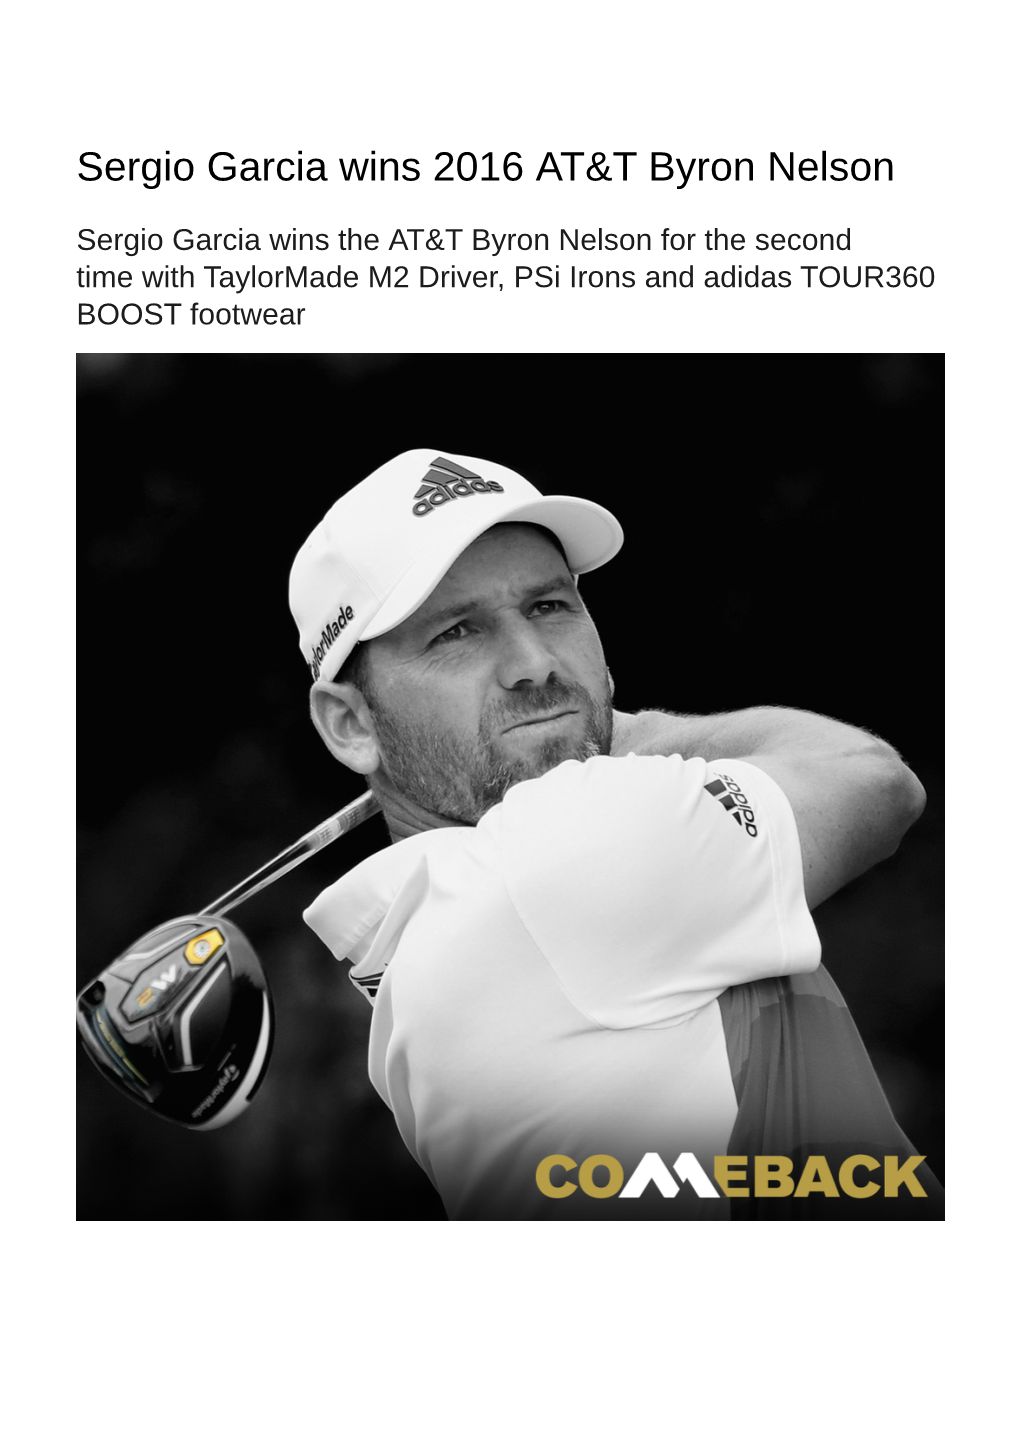 Sergio Garcia Wins 2016 AT&T Byron Nelson